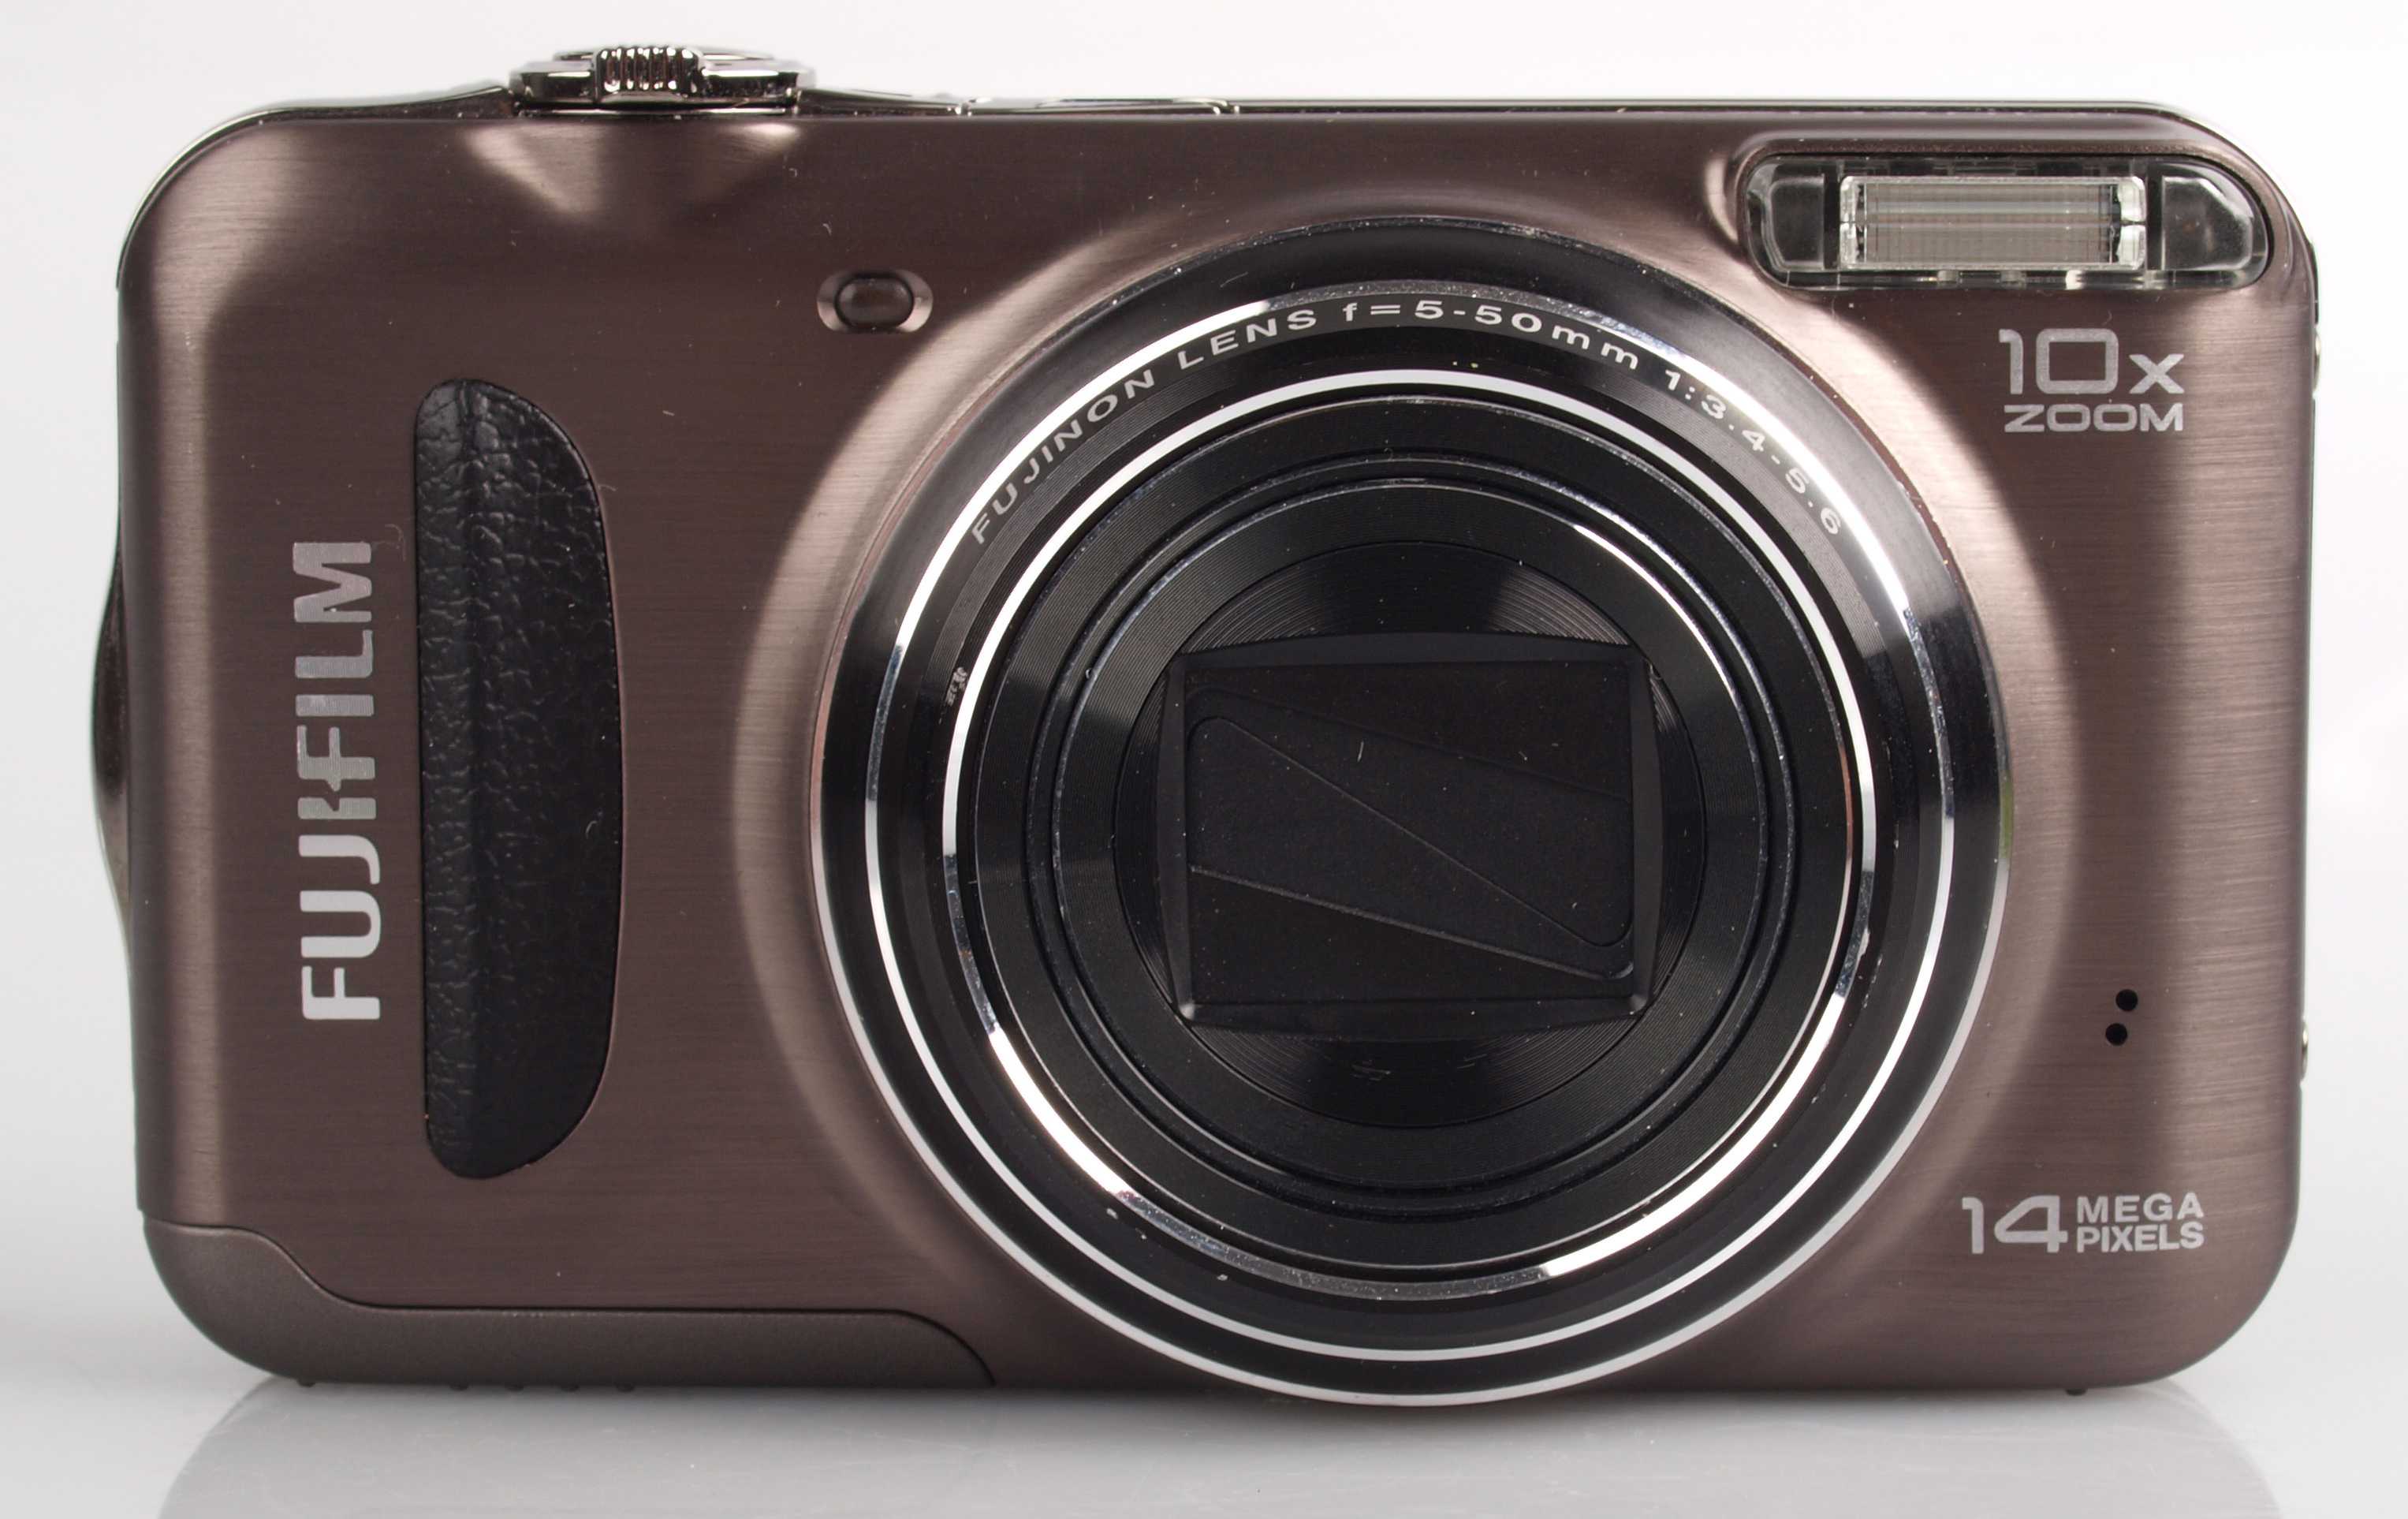 Цифровой фотоаппарат Fujifilm FinePix T200 - подробные характеристики обзоры видео фото Цены в интернет-магазинах где можно купить цифровую фотоаппарат Fujifilm FinePix T200